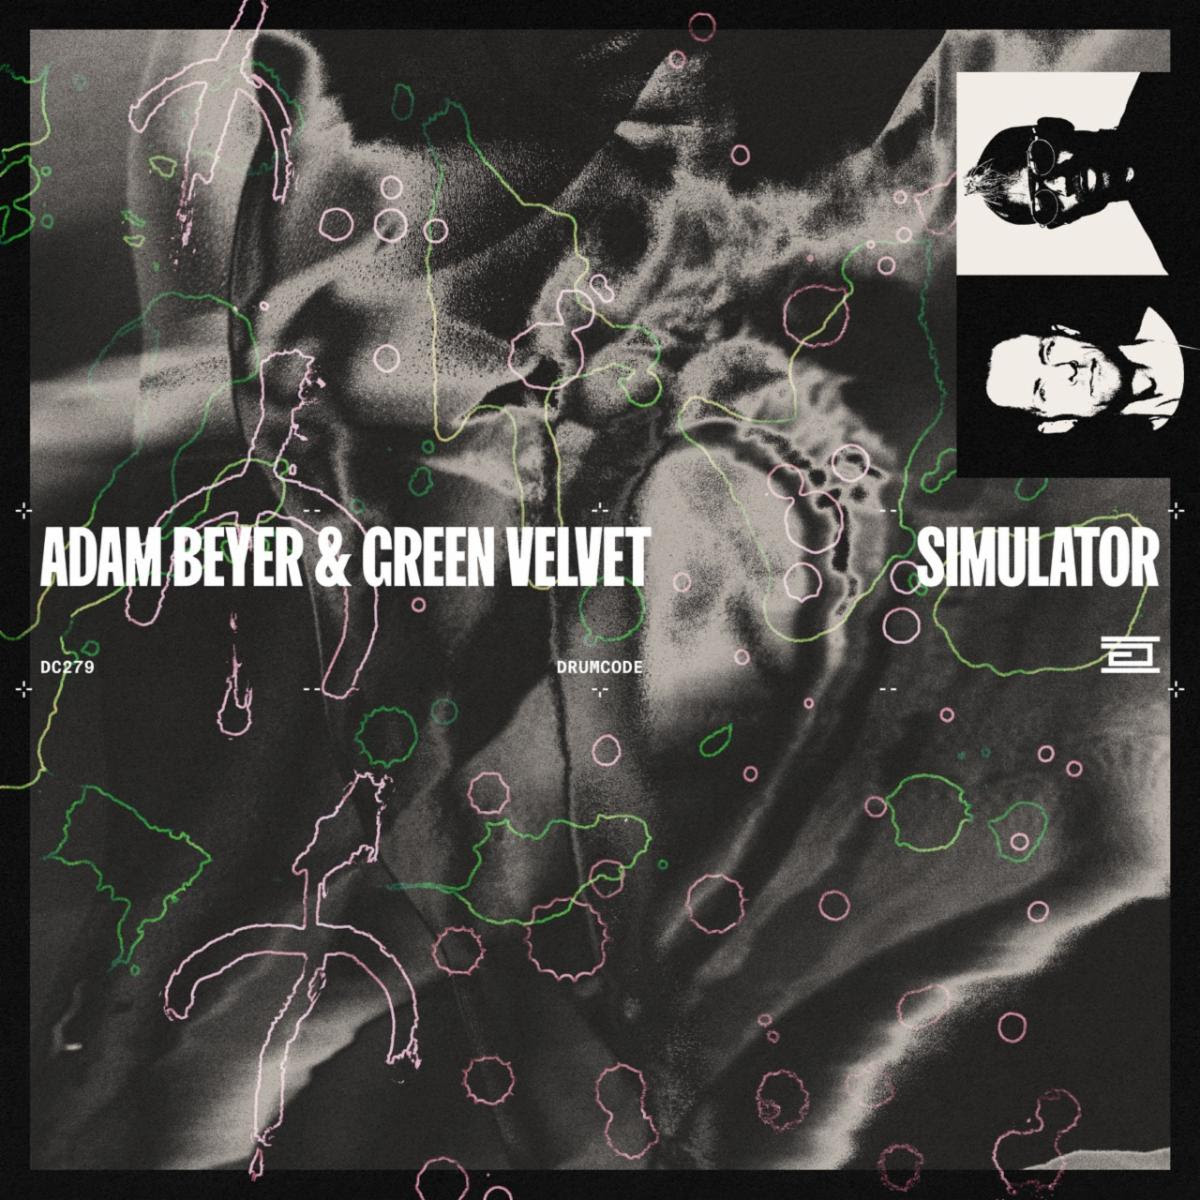 Adam Beyer & Green Velvet Release New Single “Simulator”